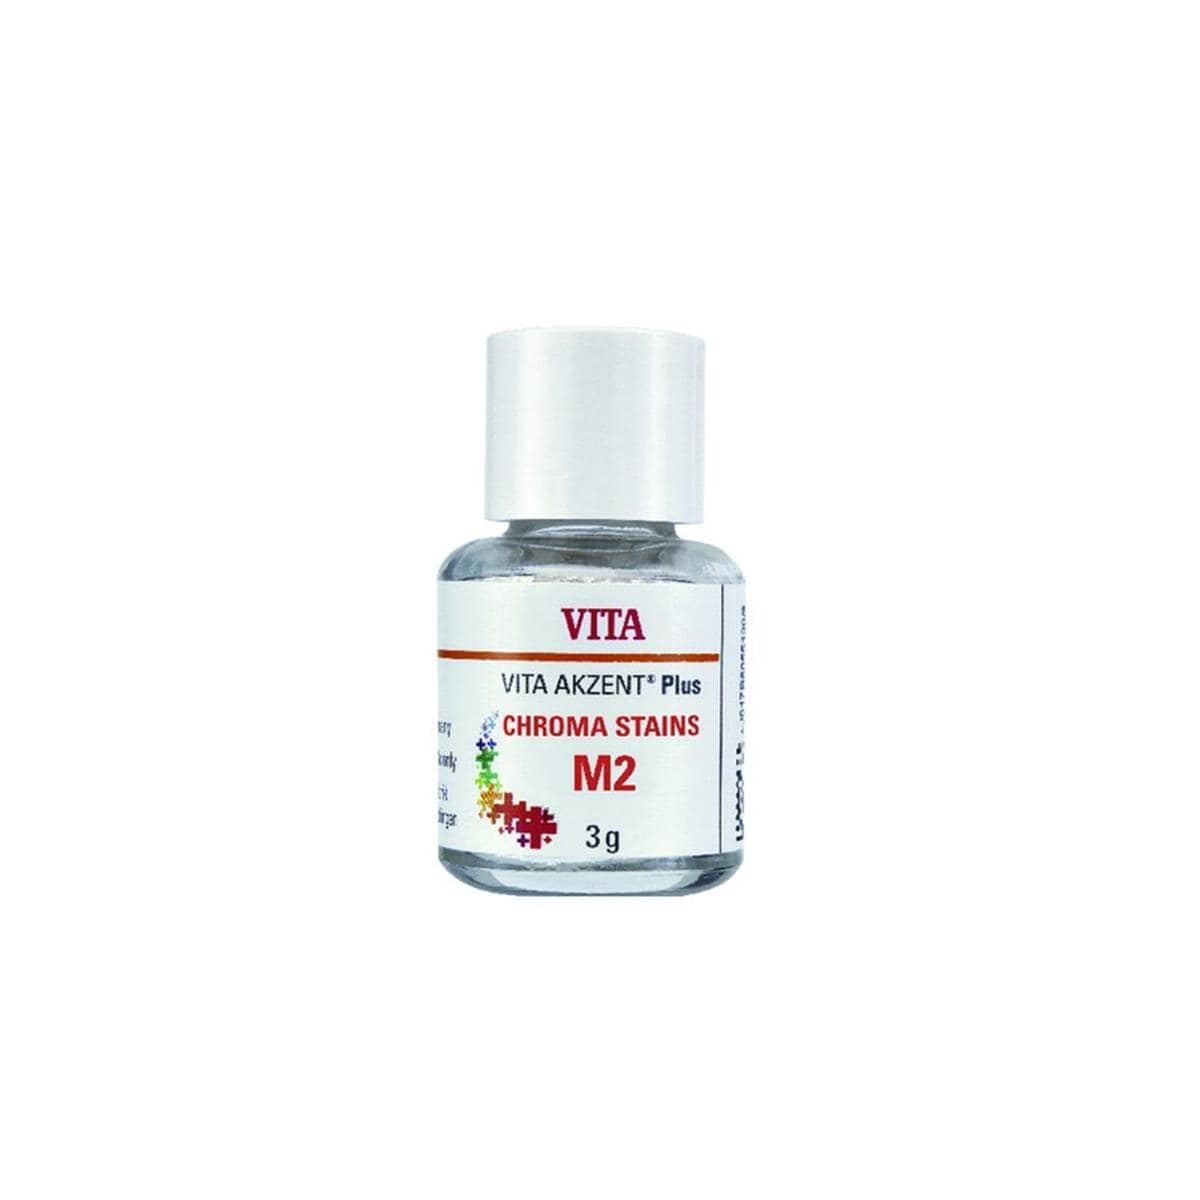 VITA Akzent Plus 3D-Master - Chroma Stains M2 - La poudre de 3 g